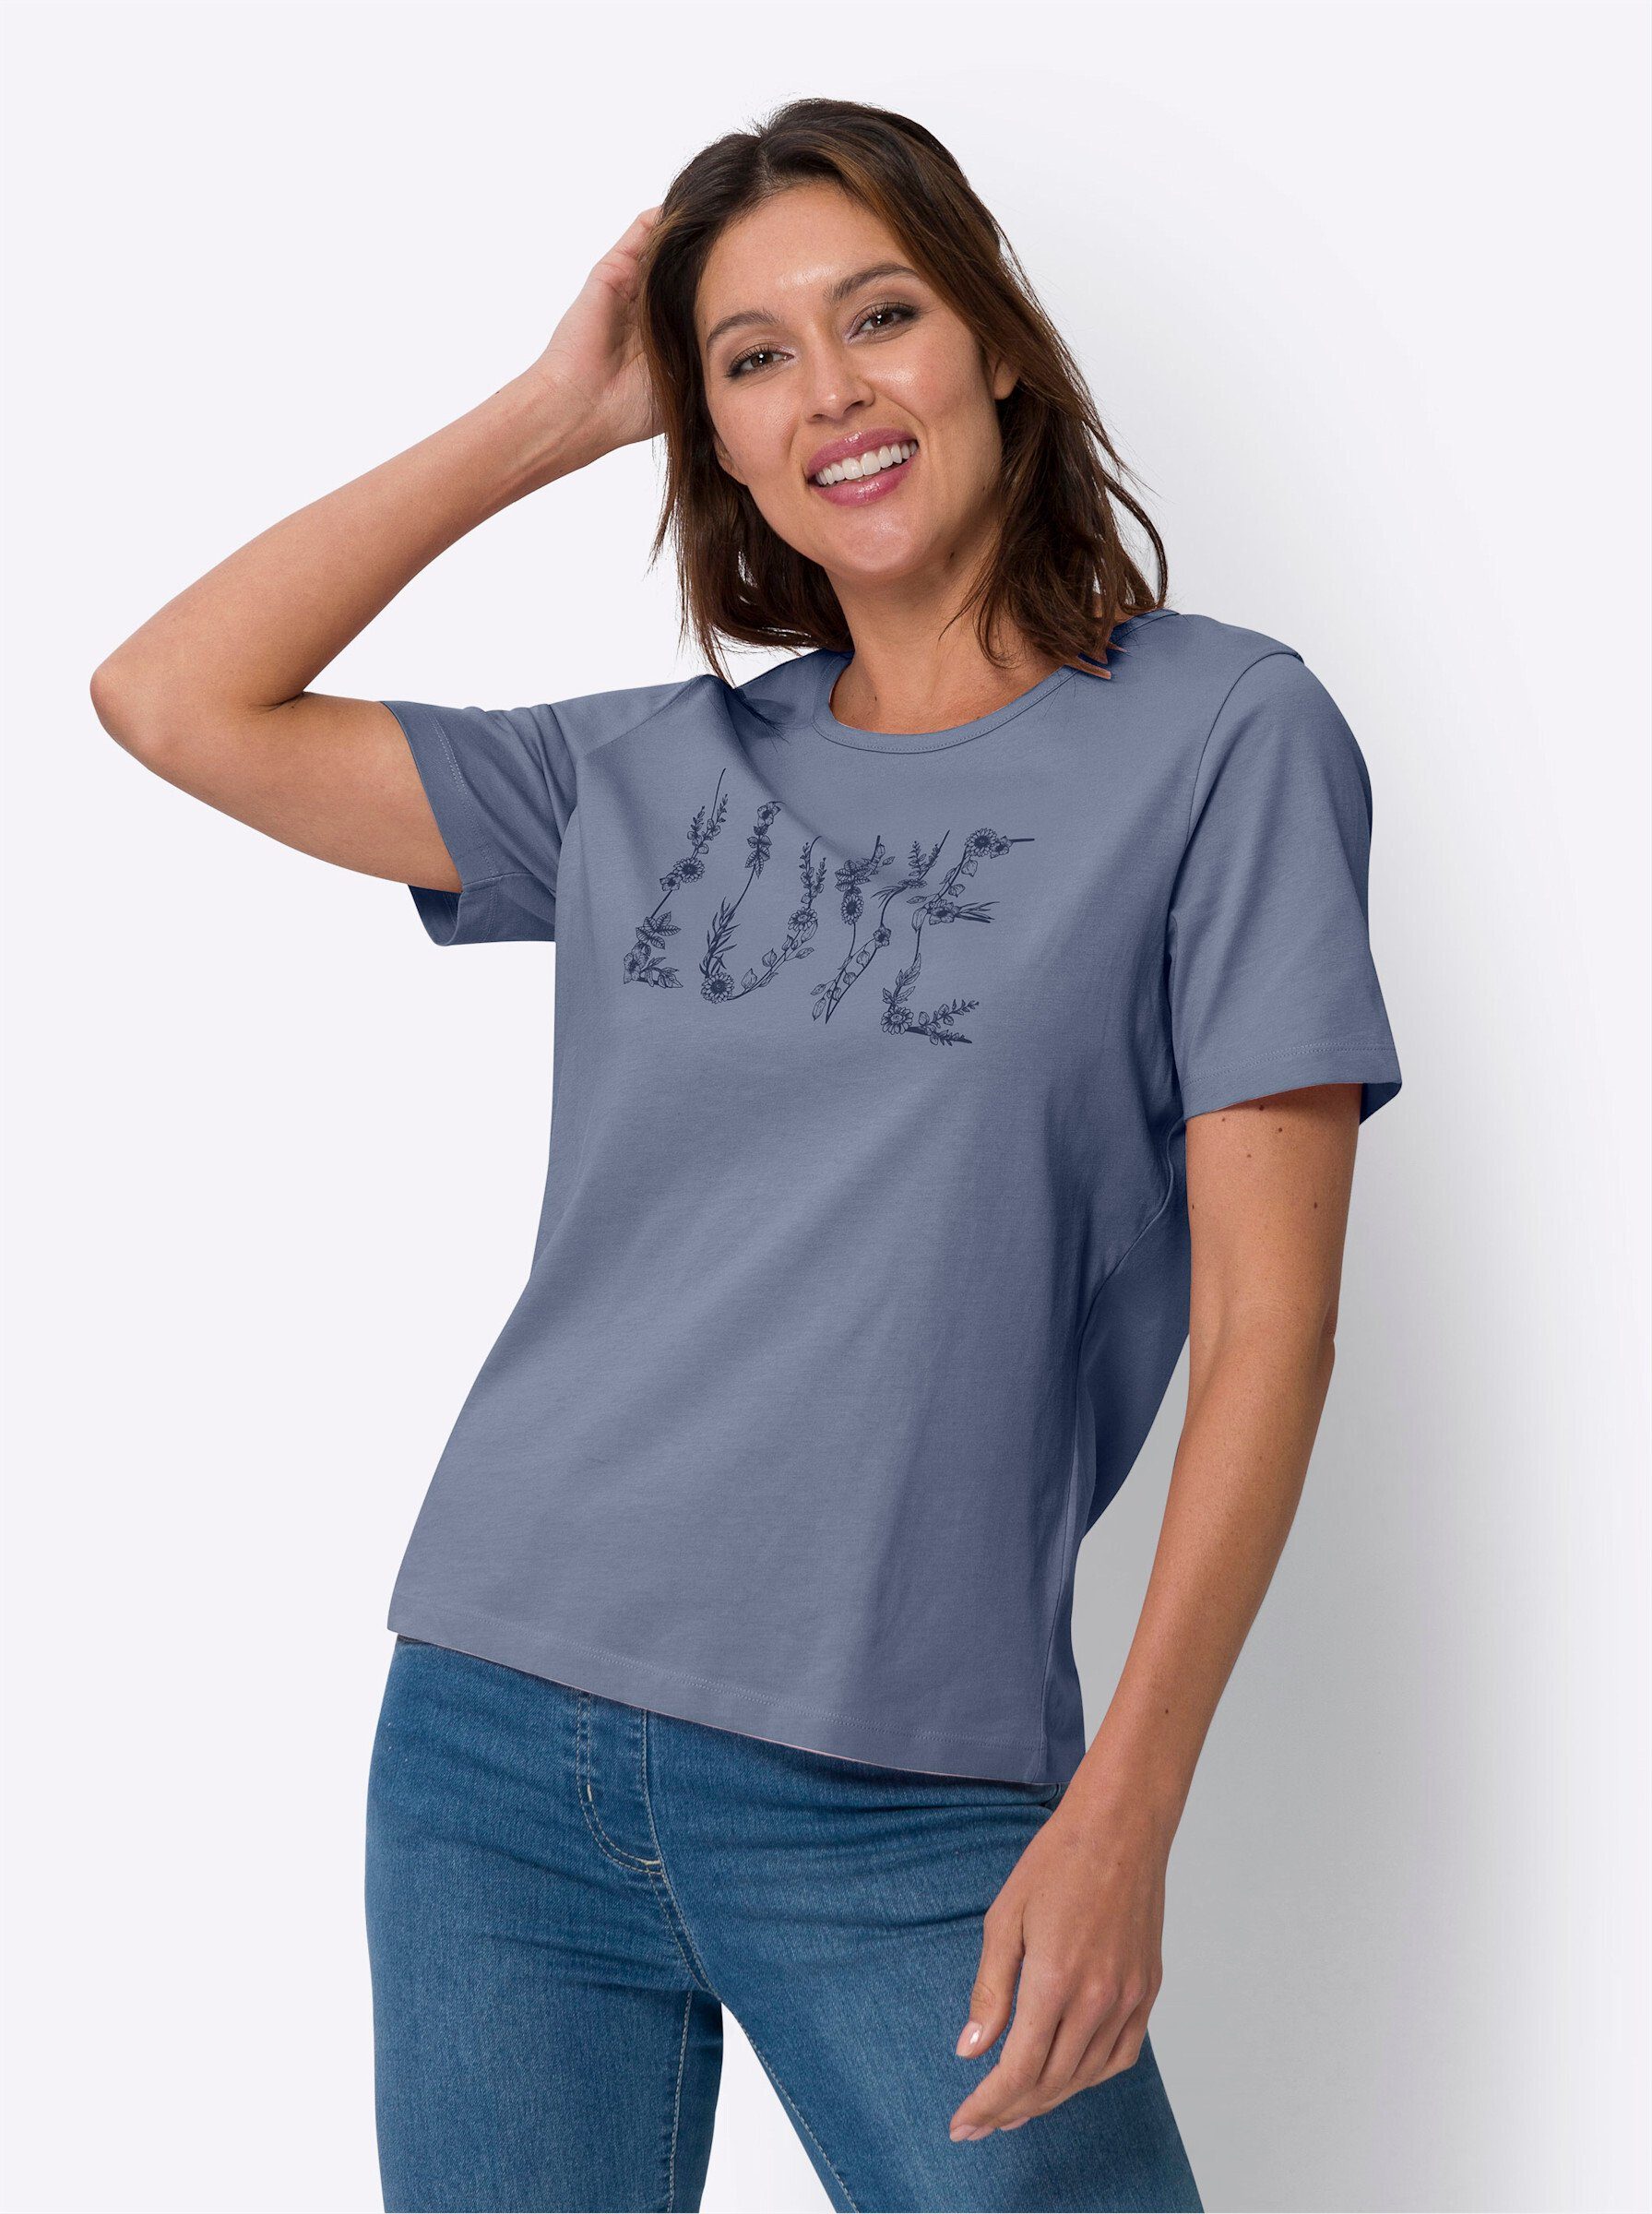 an! T-Shirt Sieh taubenblau-marine